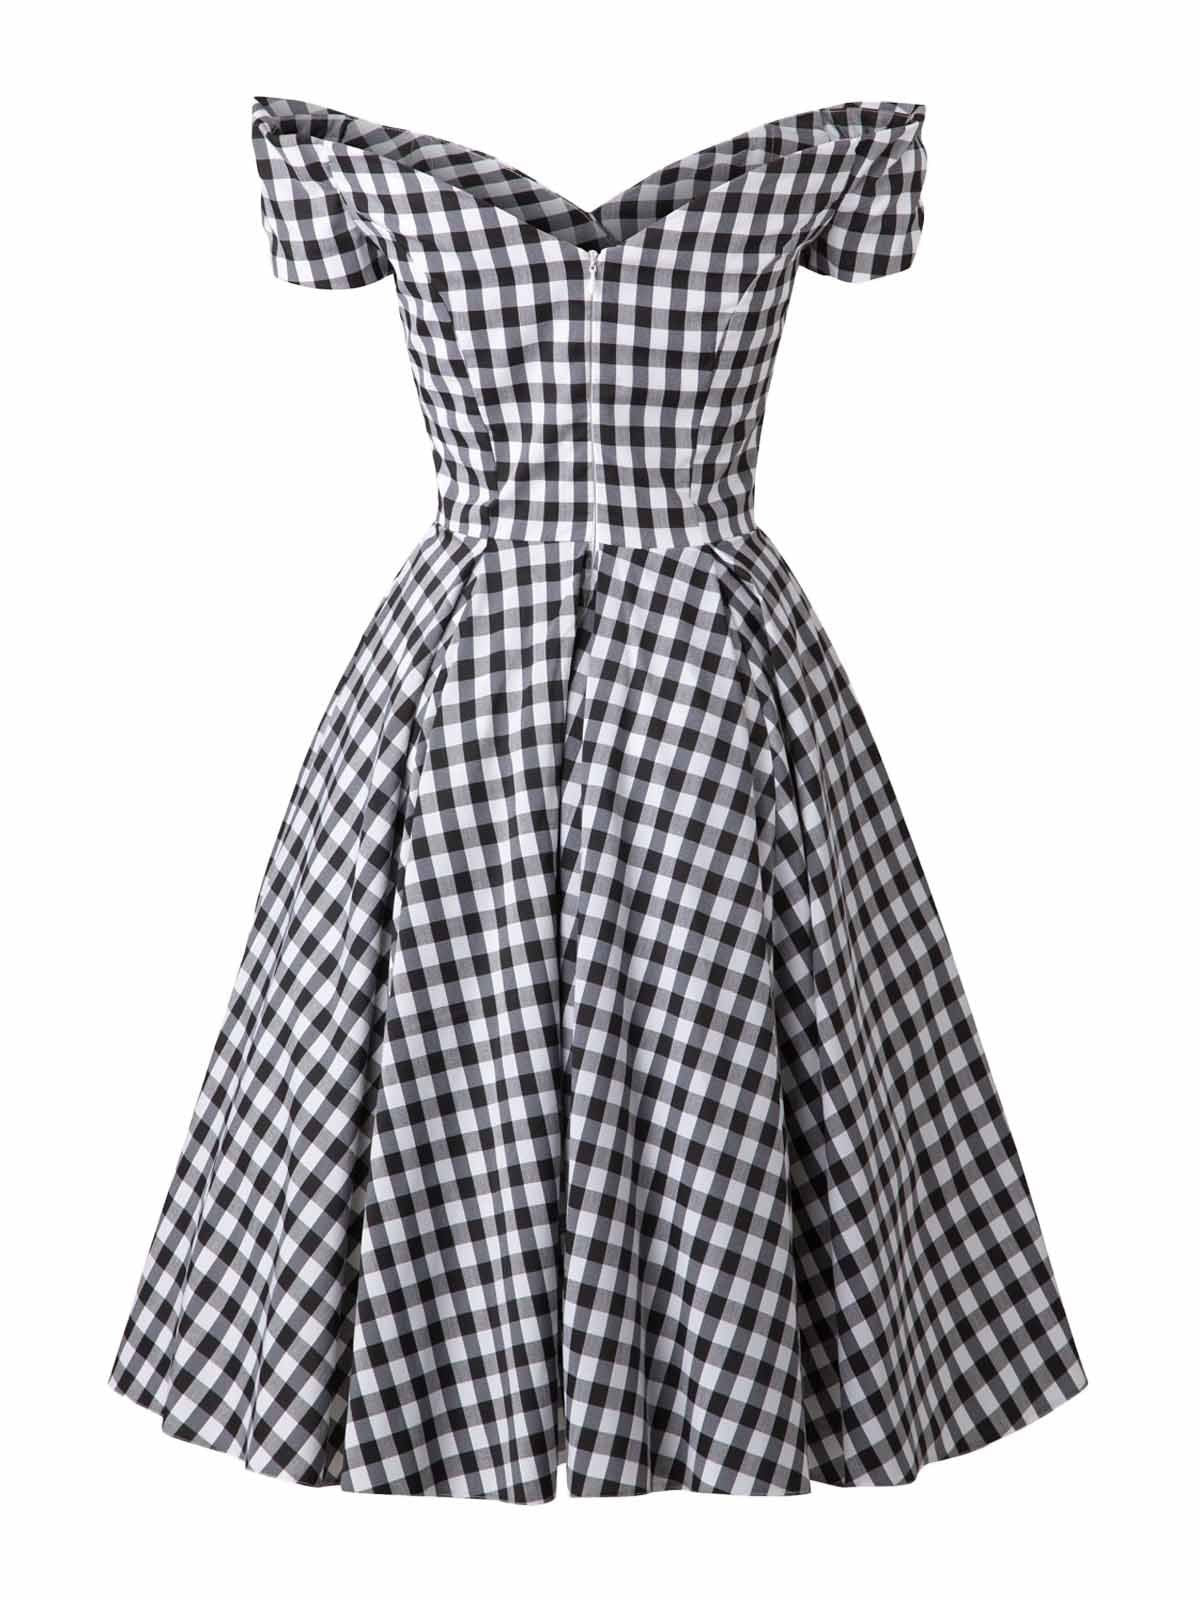 Черное свободное платье в клетку 1950-х годов